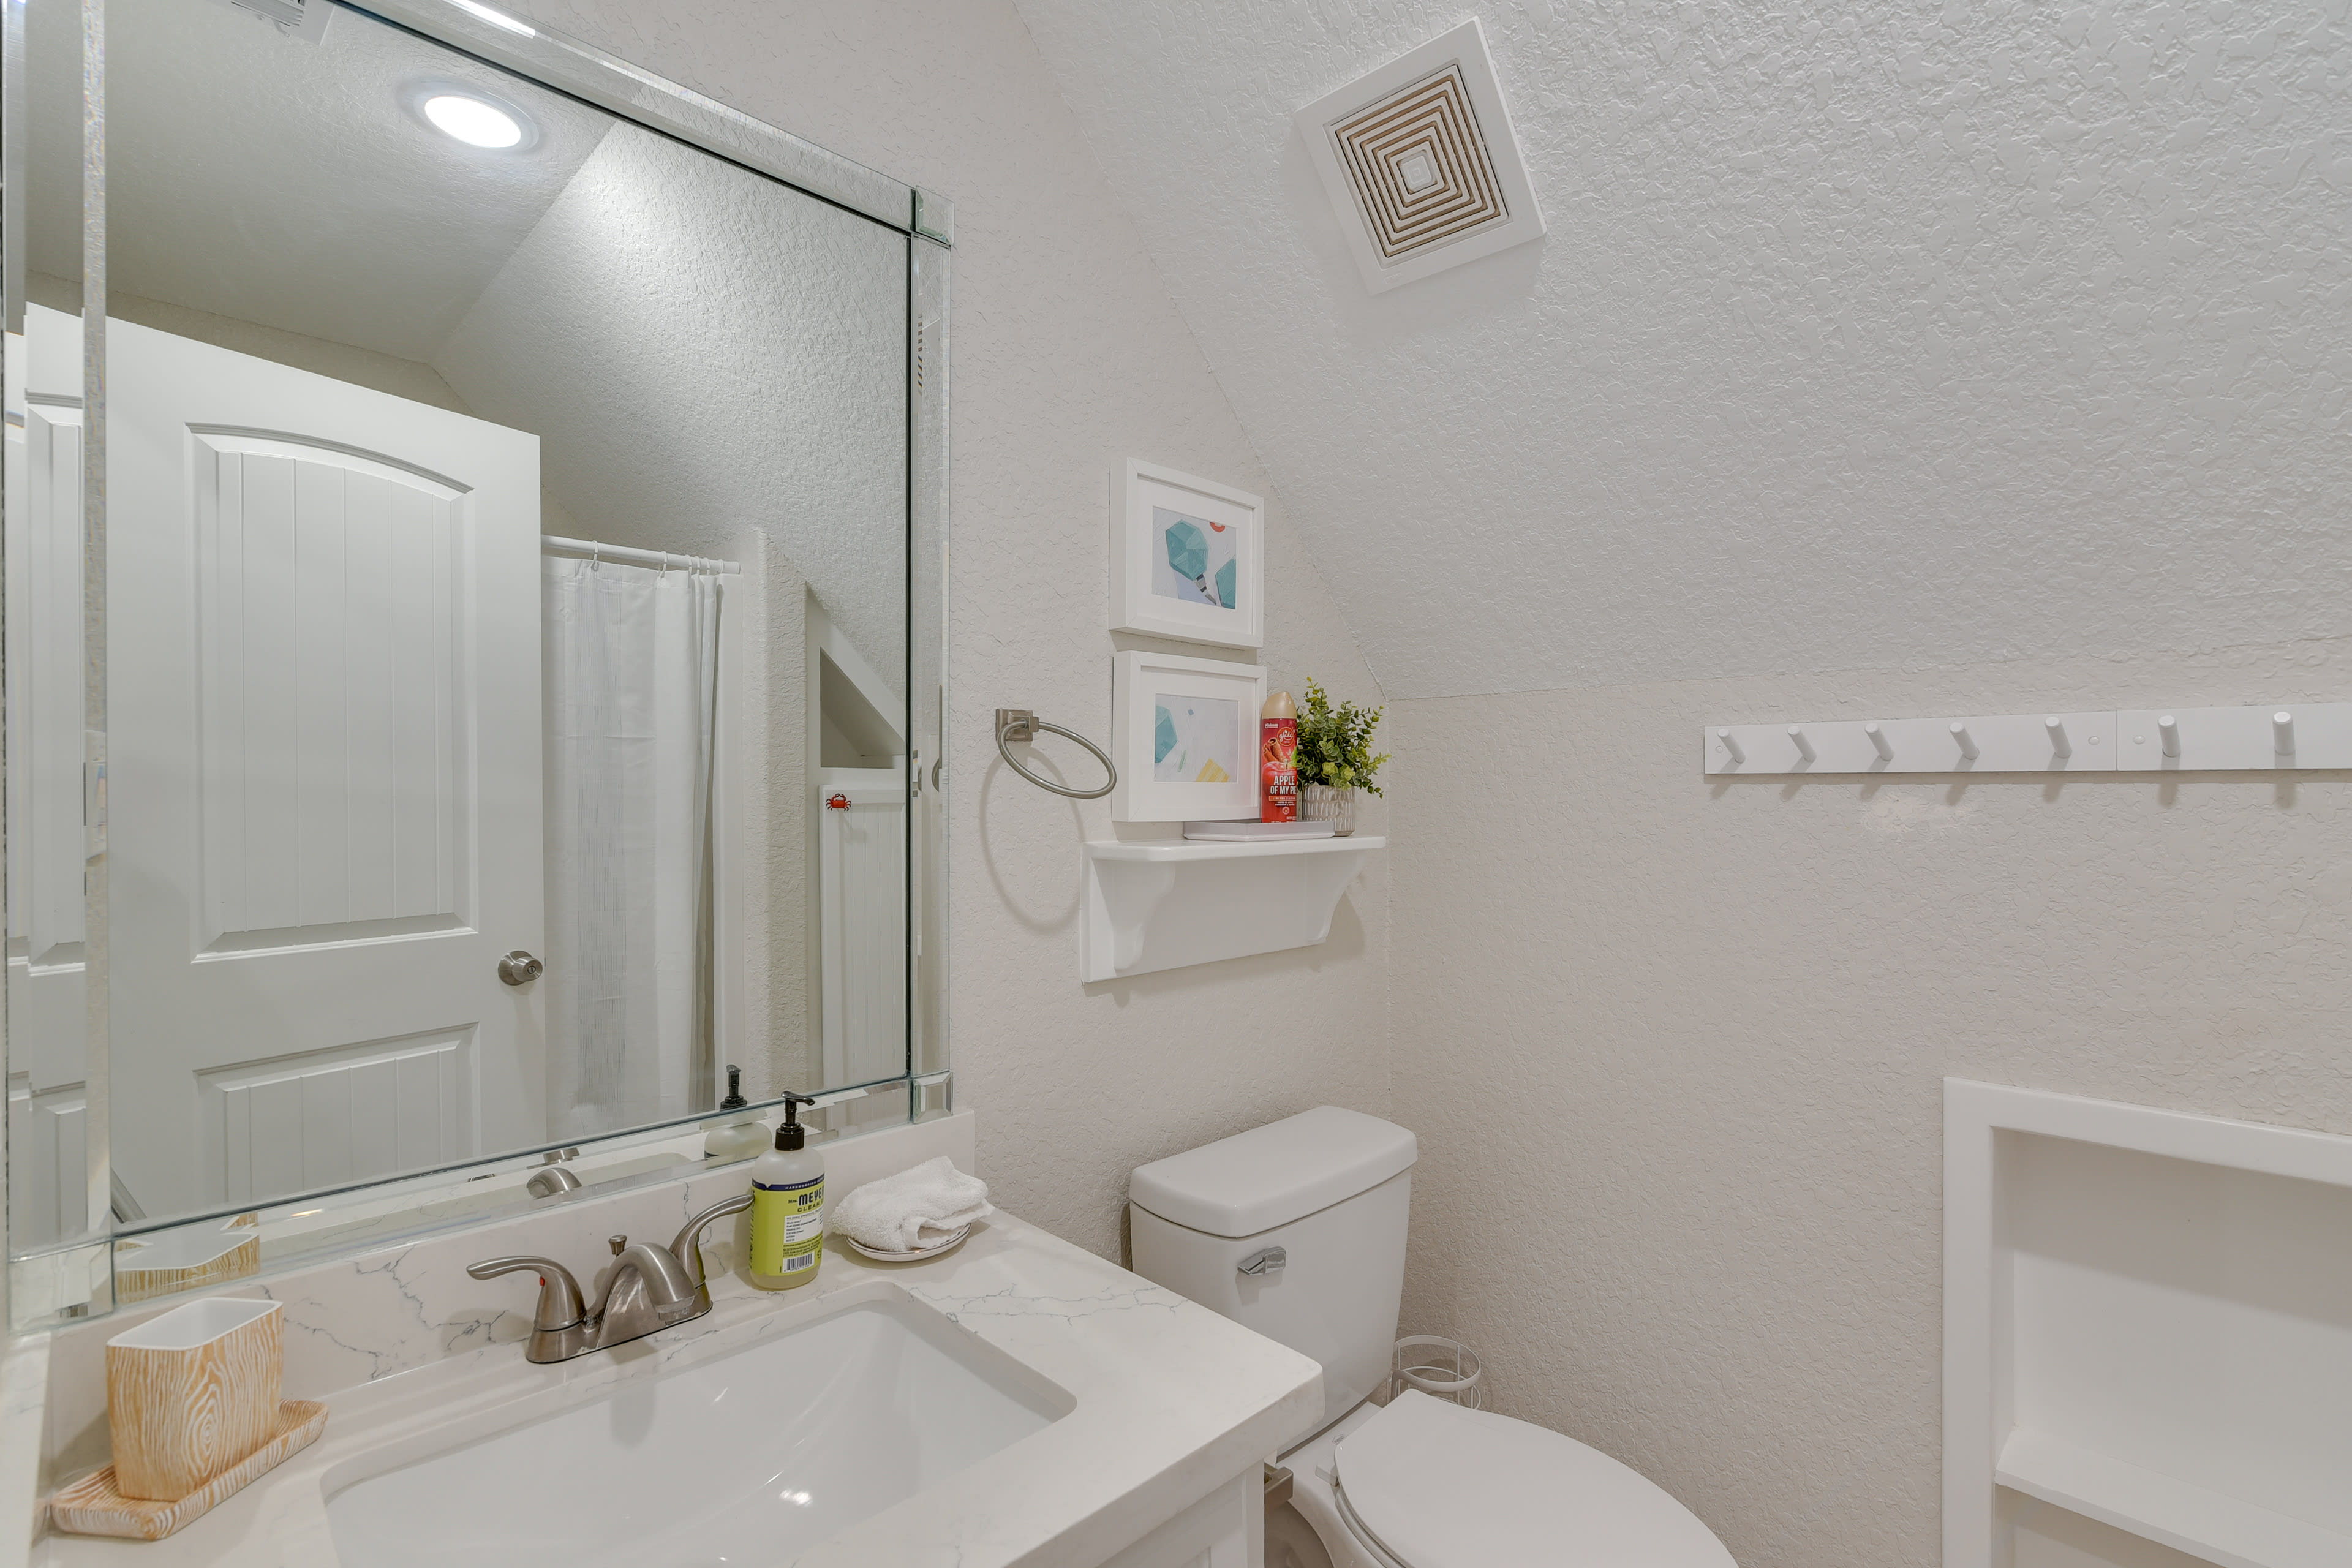 Bathroom | Complimentary Toiletries | Hair Dryer